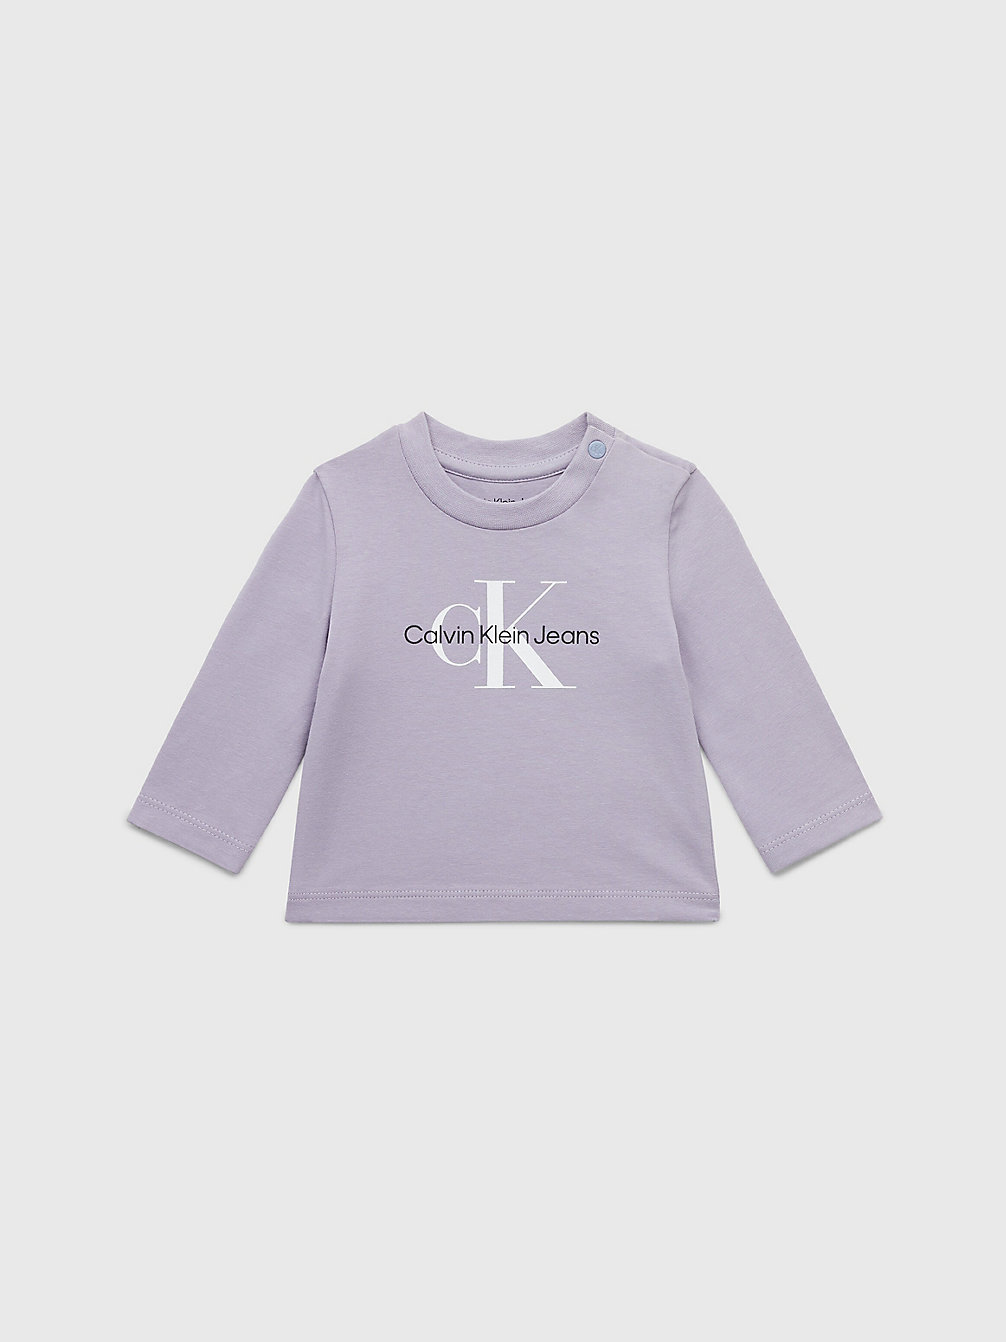 T-Shirt À Manches Longues Pour Nouveau-Né > SMOKY LILAC > undefined newborn > Calvin Klein